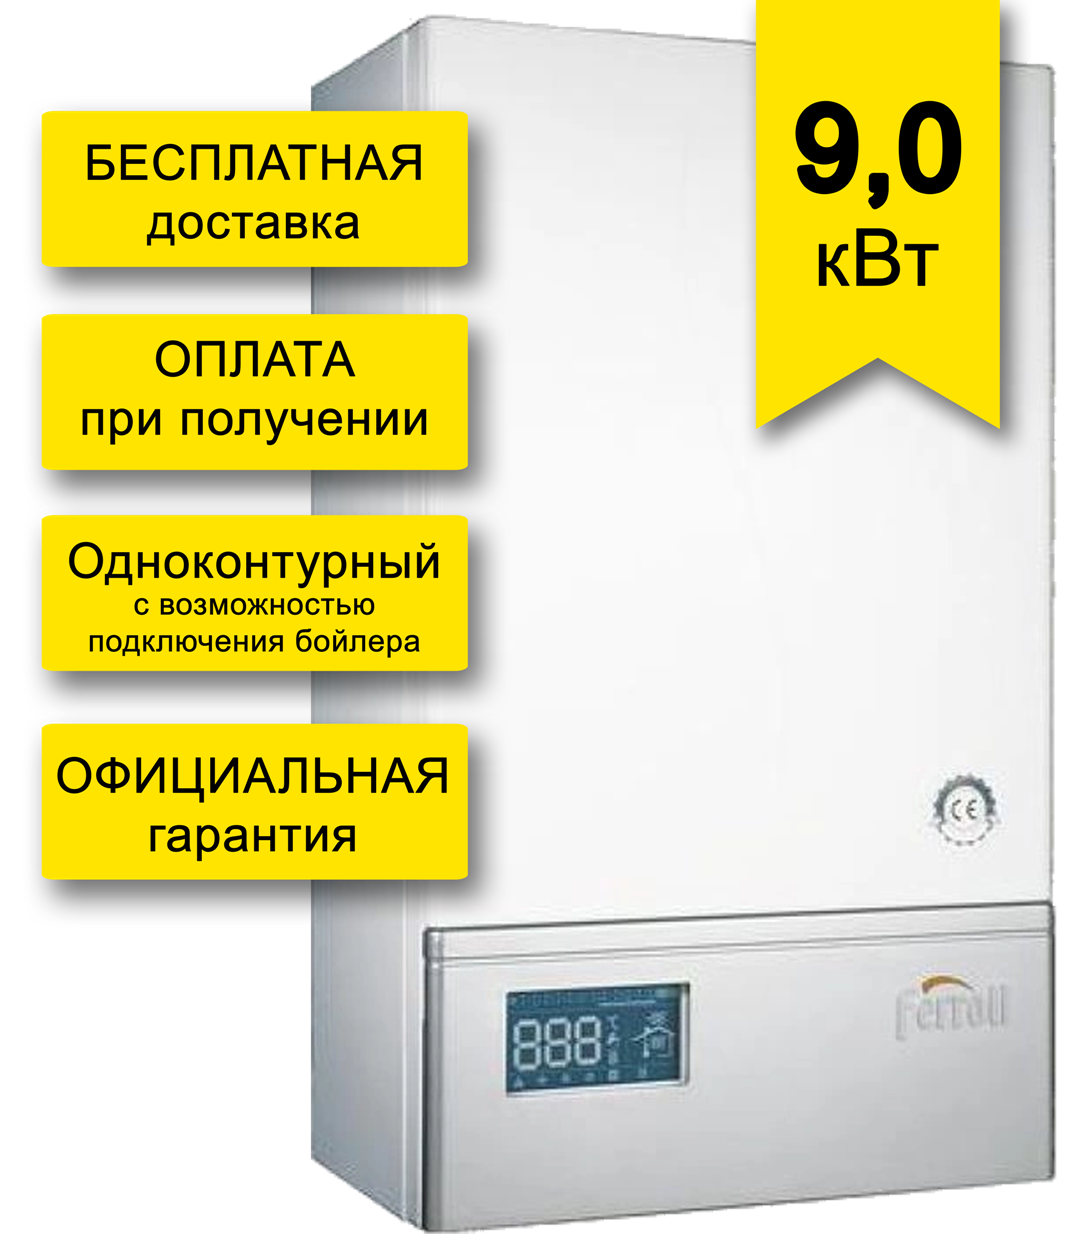 Электрический котел Ferroli Leb 9.0-TS, Беларусь